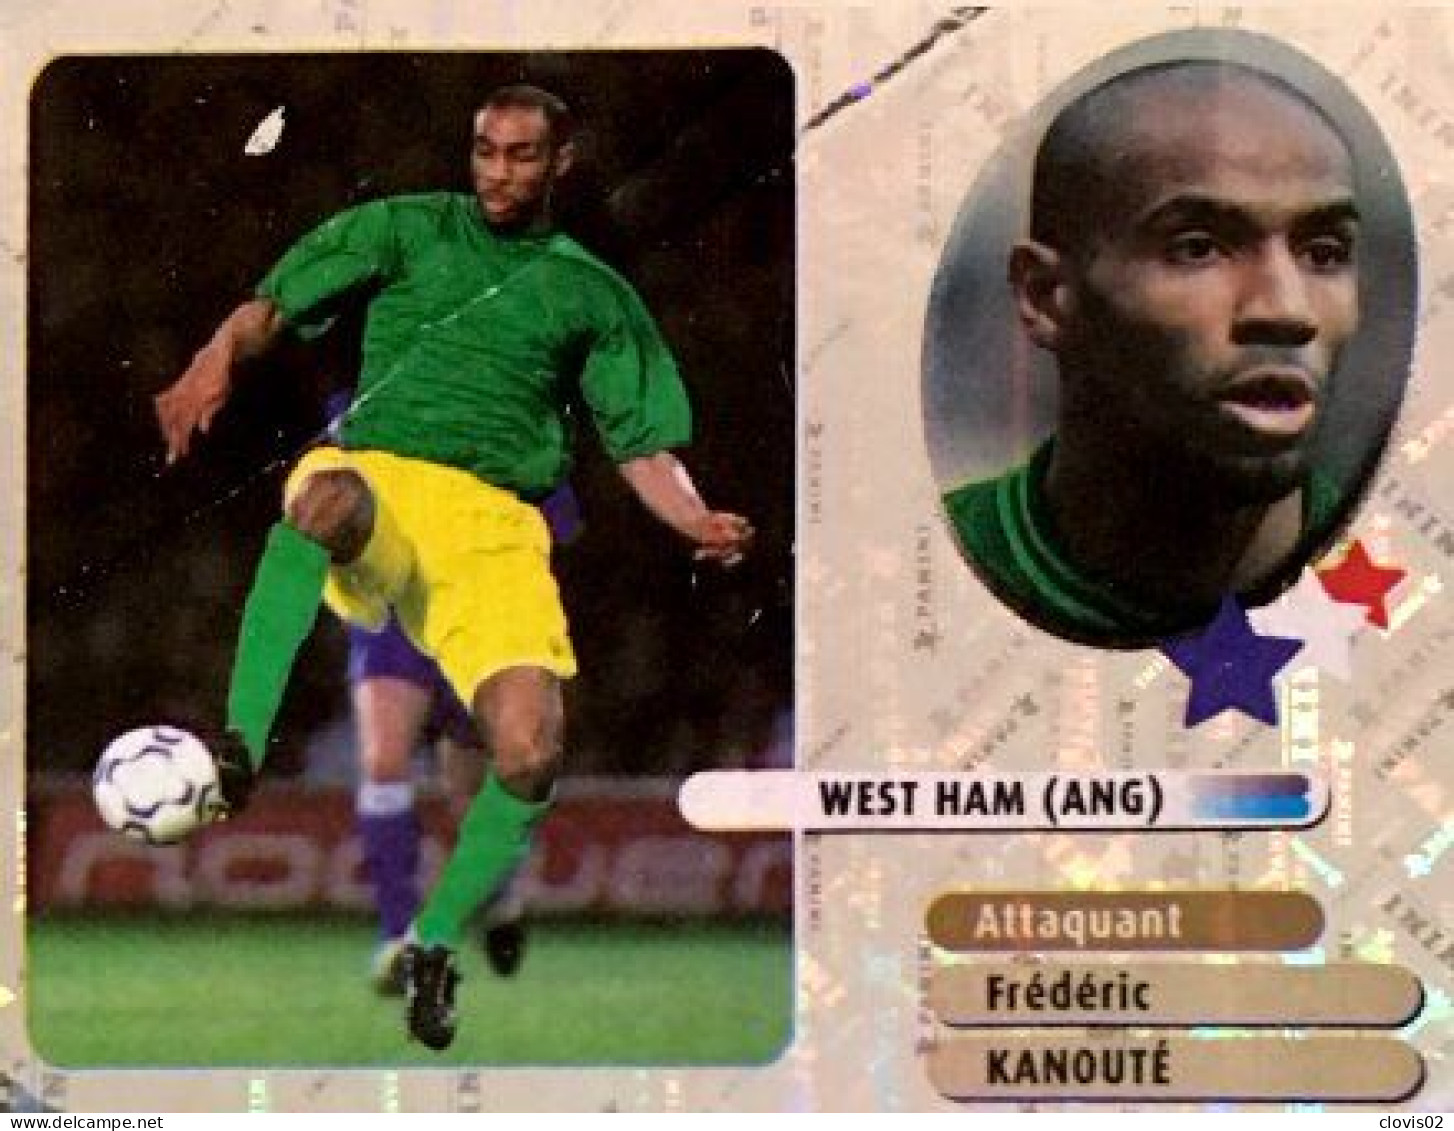 352 Frédéric Kanouté - West Ham - Stars Du Foot - Panini France Foot 2003 Sticker Vignette - French Edition